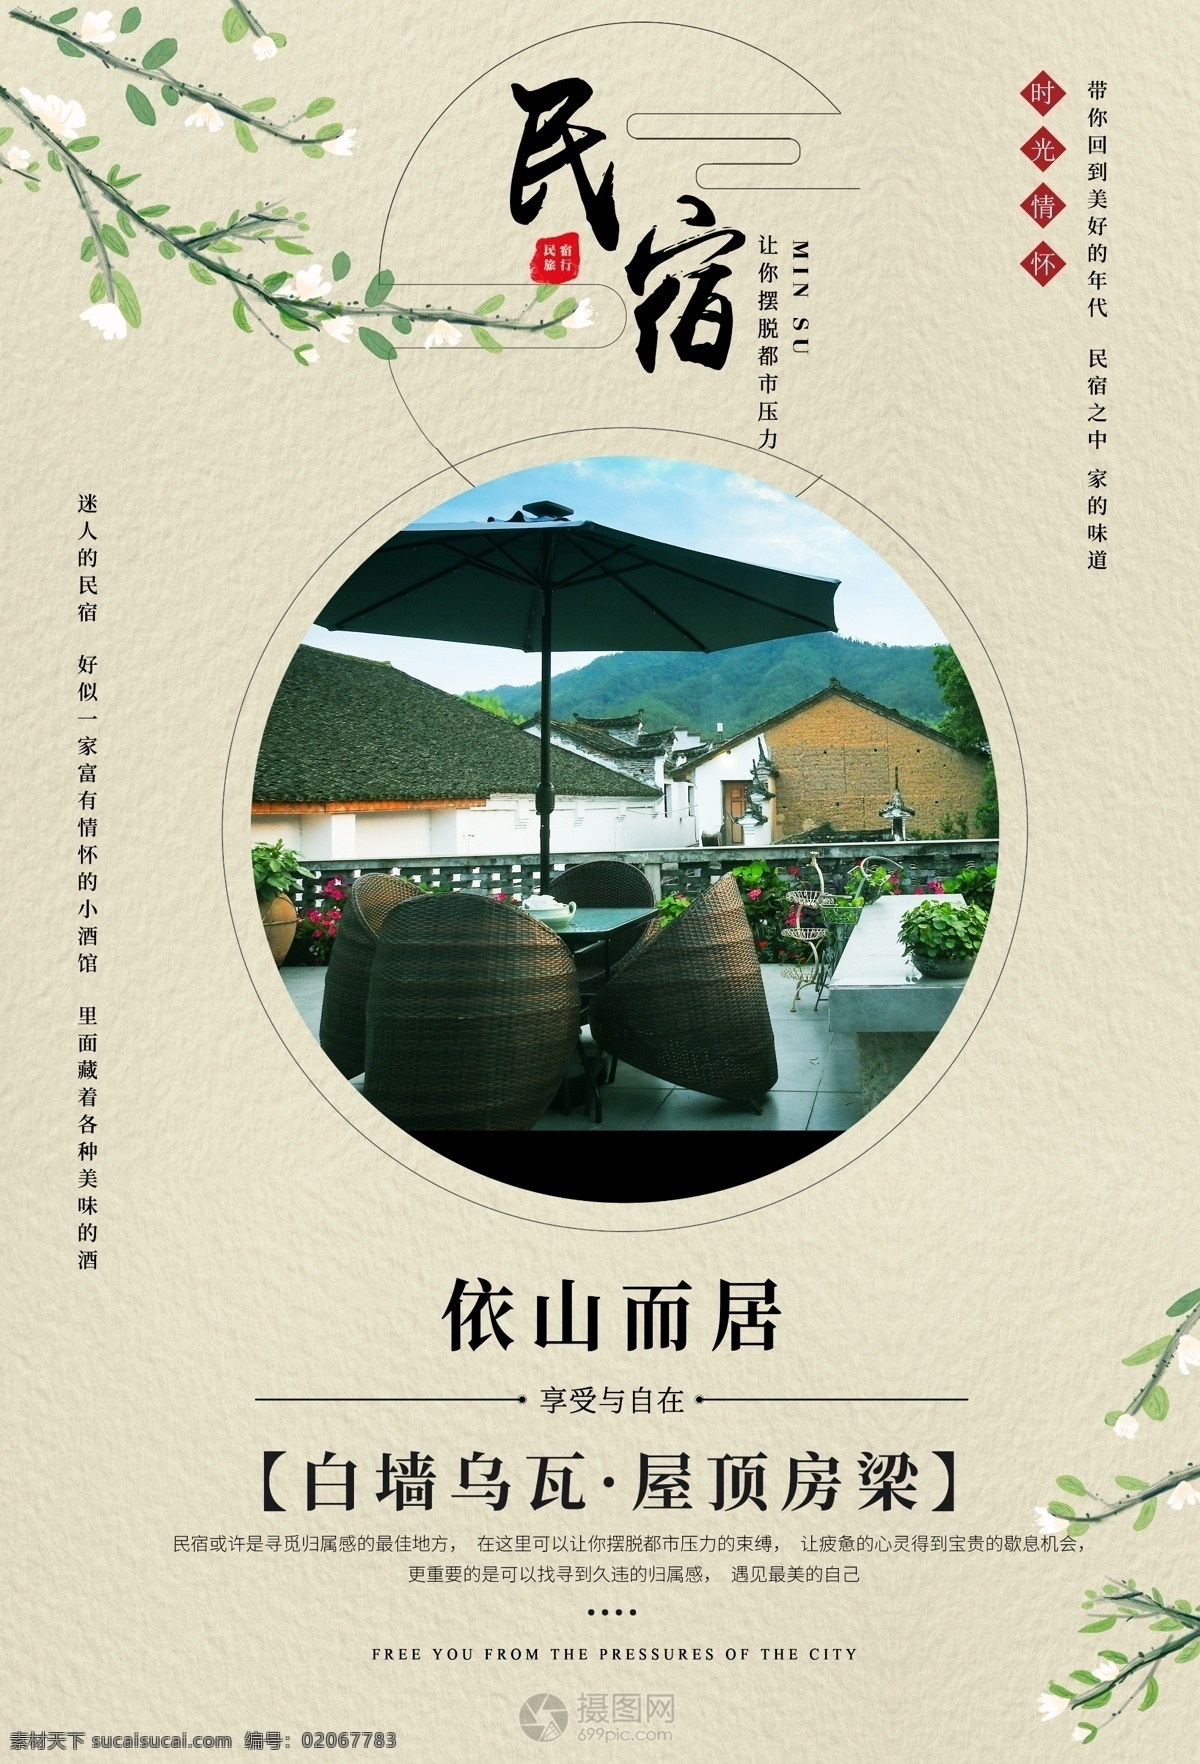 民宿海报设计 中国风 民宿 旅游 住宿 原生态 依山而居 旅游海报